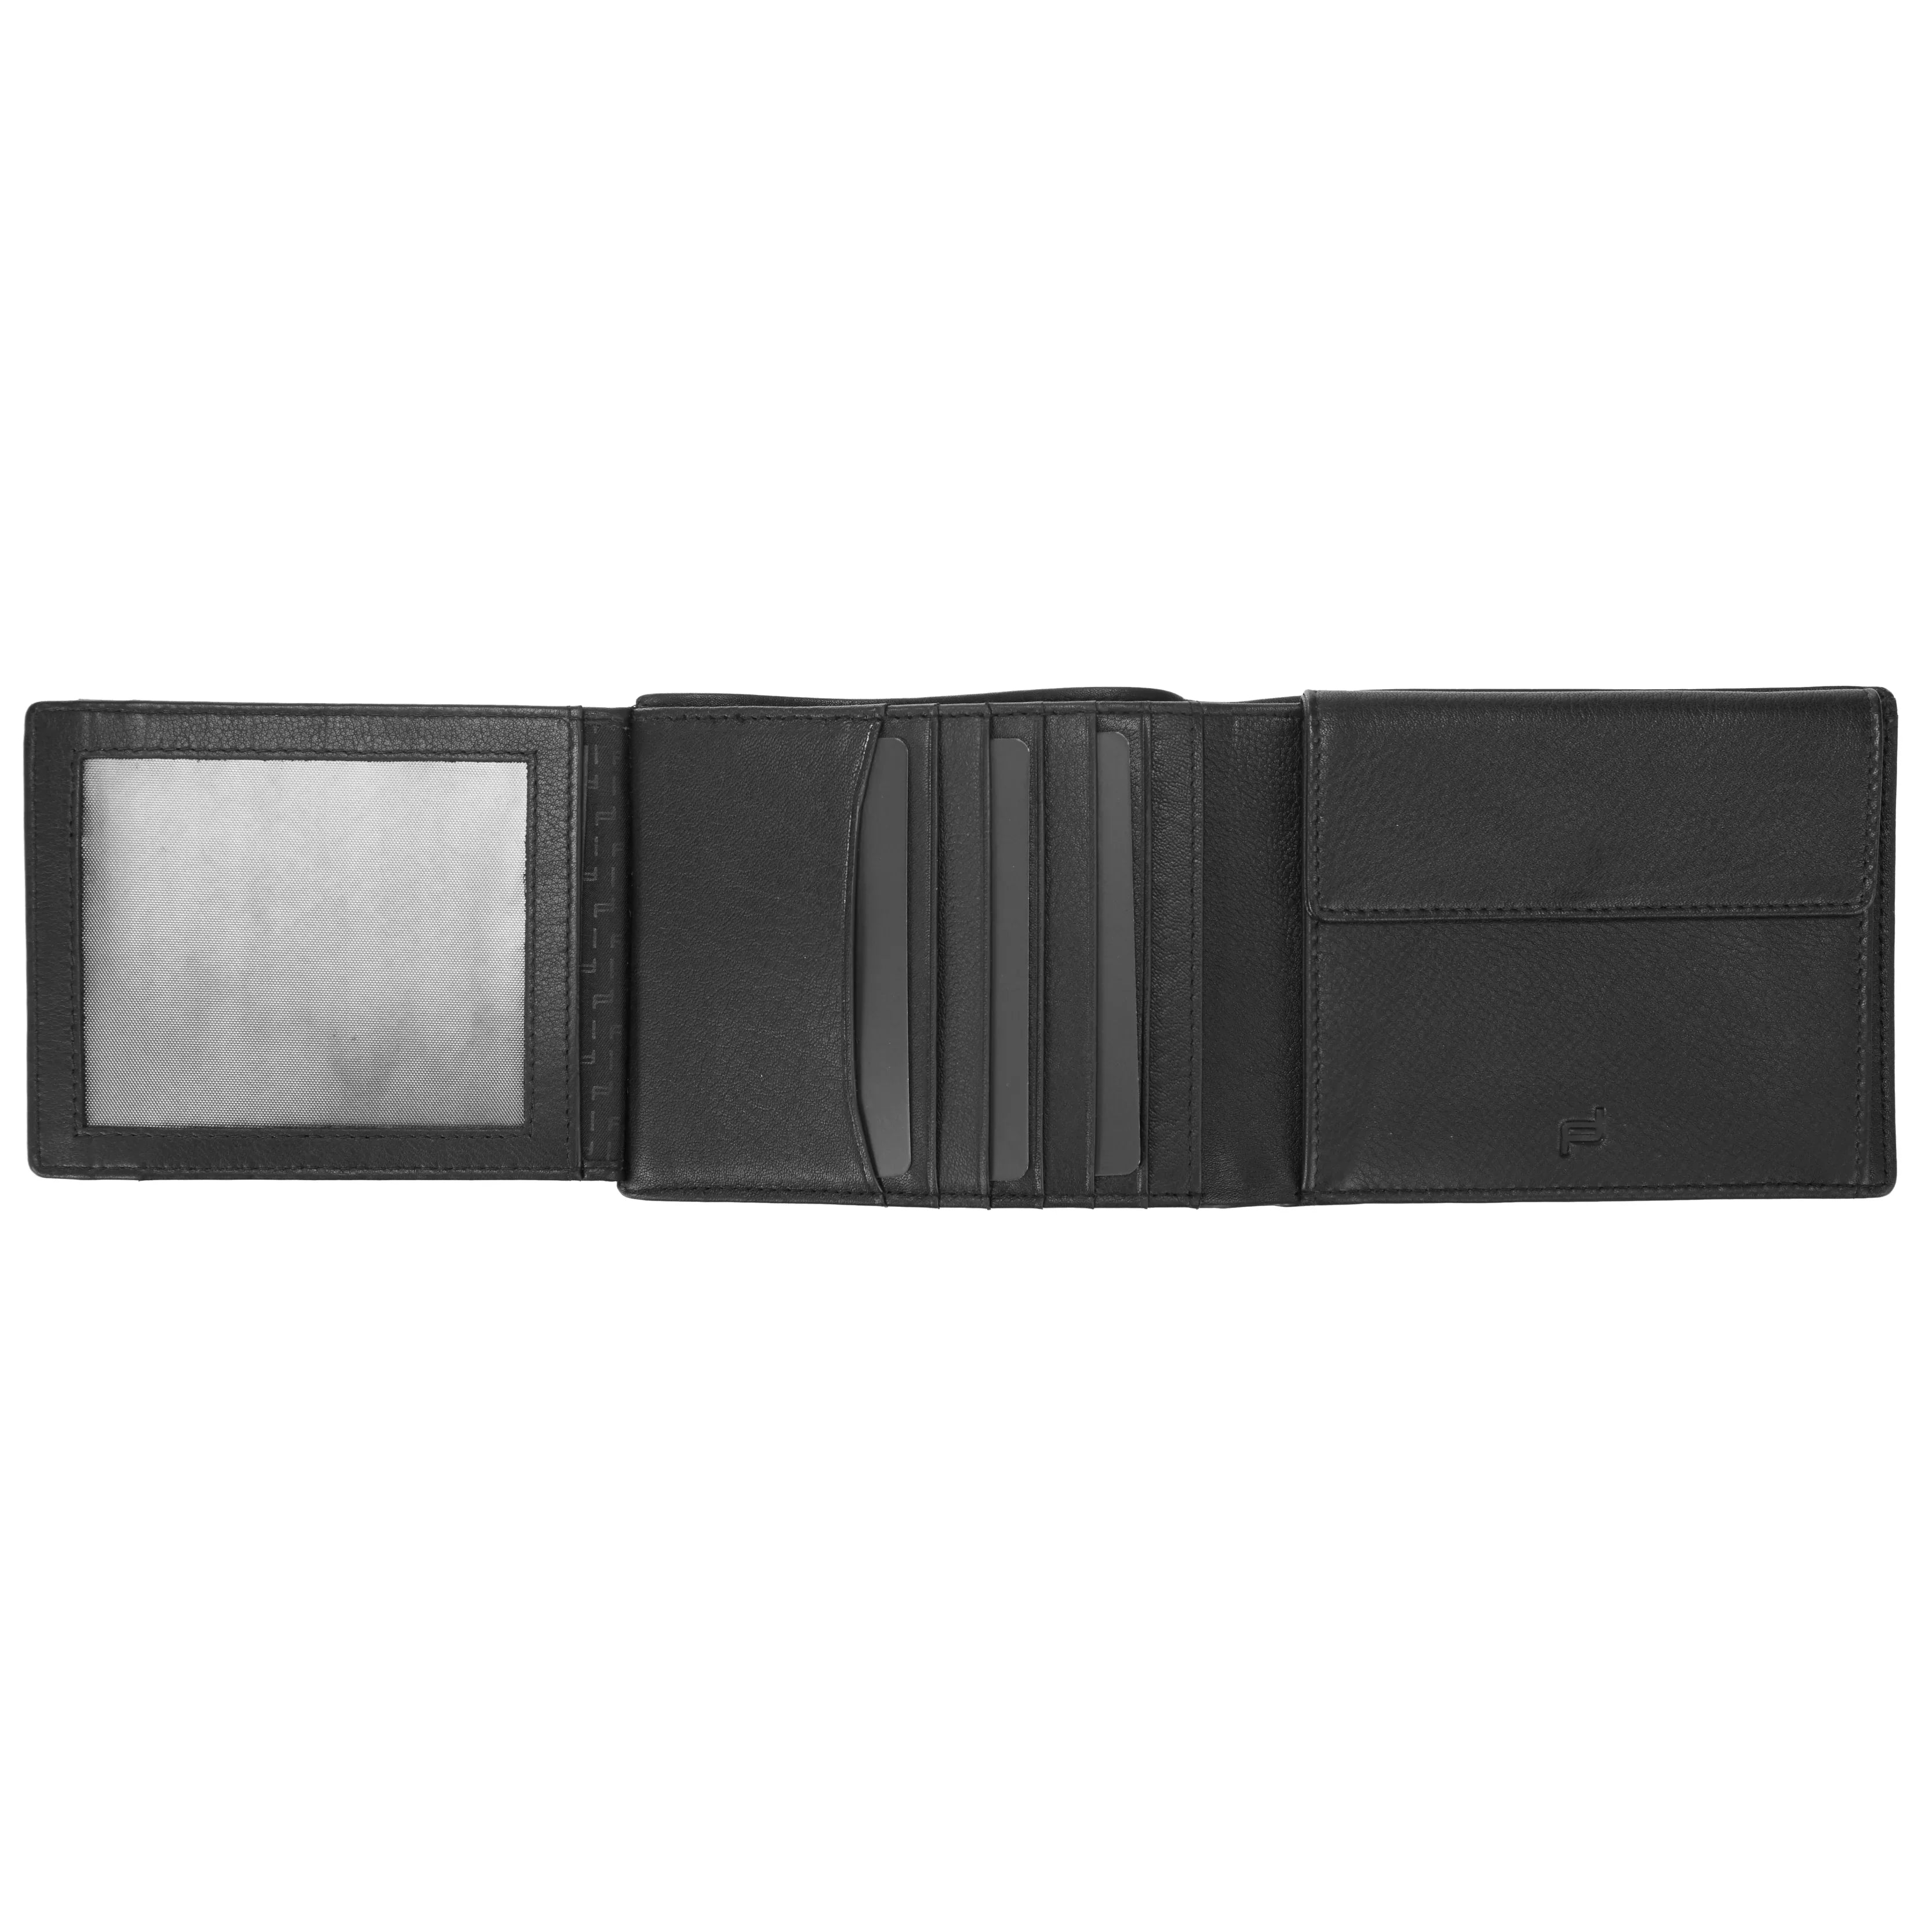 Porsche Design Accessories Business Wallet 10 RFID 12 cm - Black